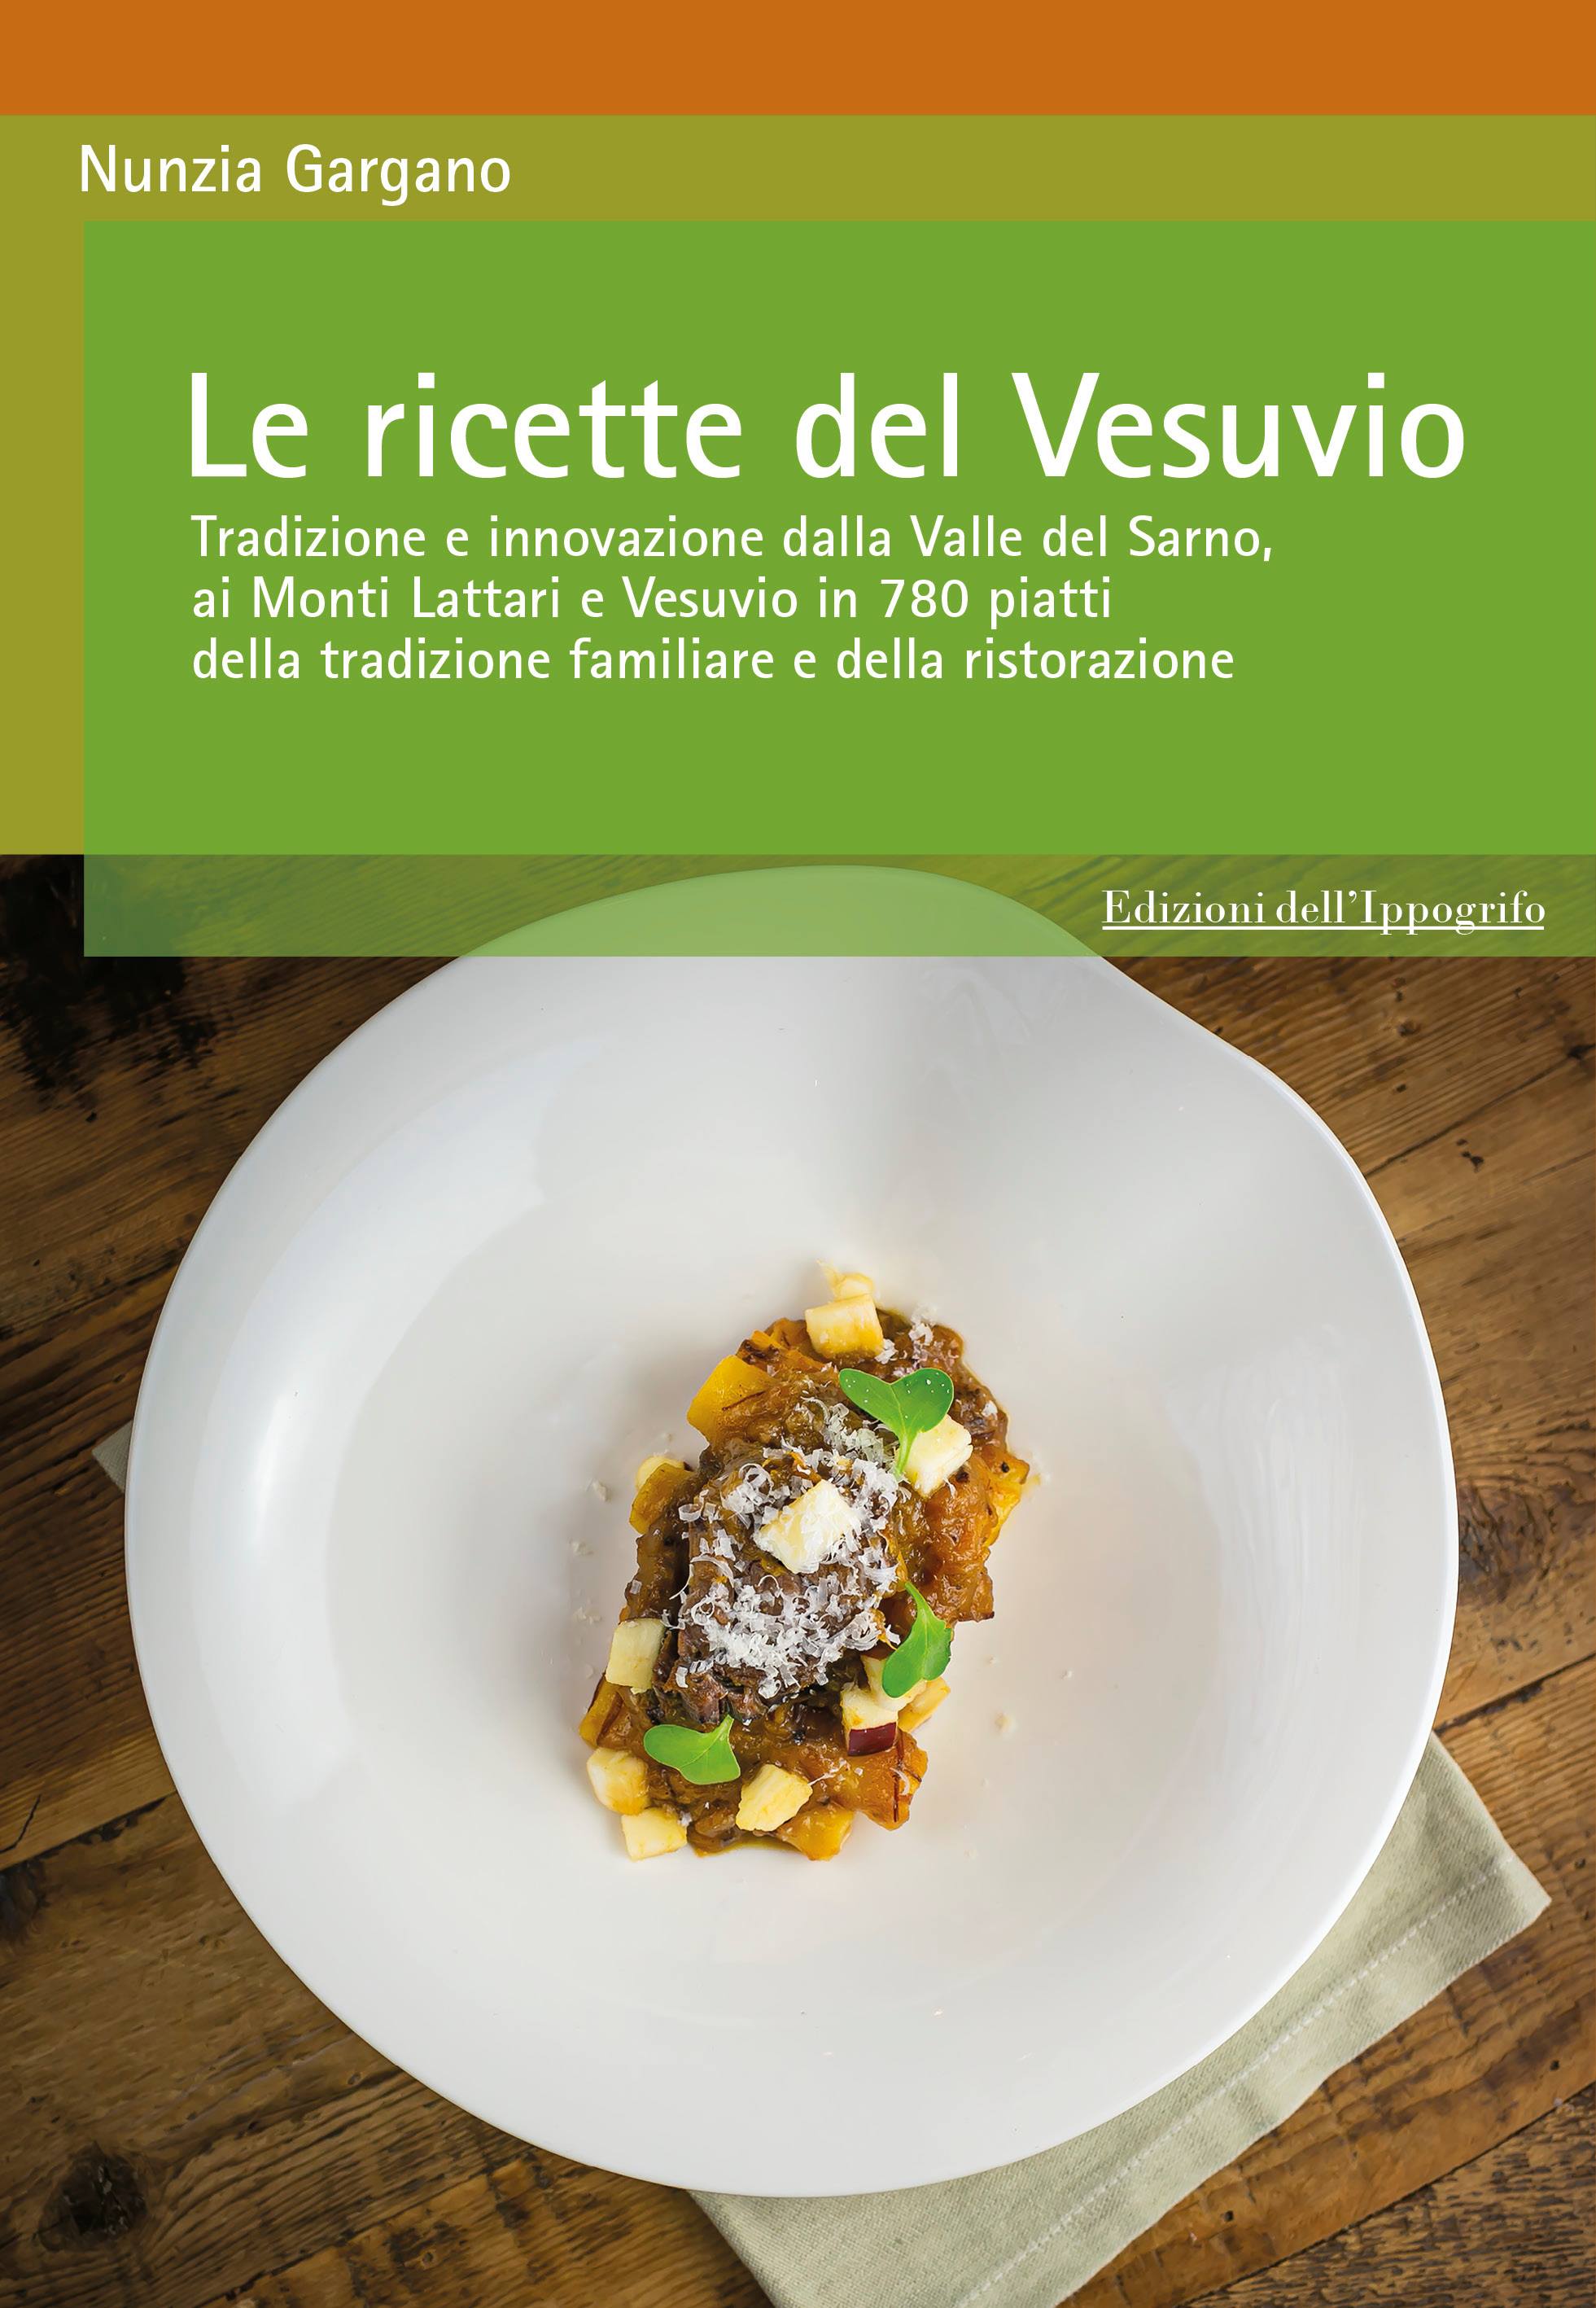 Le ricette del Vesuvio, il libro di Nunzia Gargano